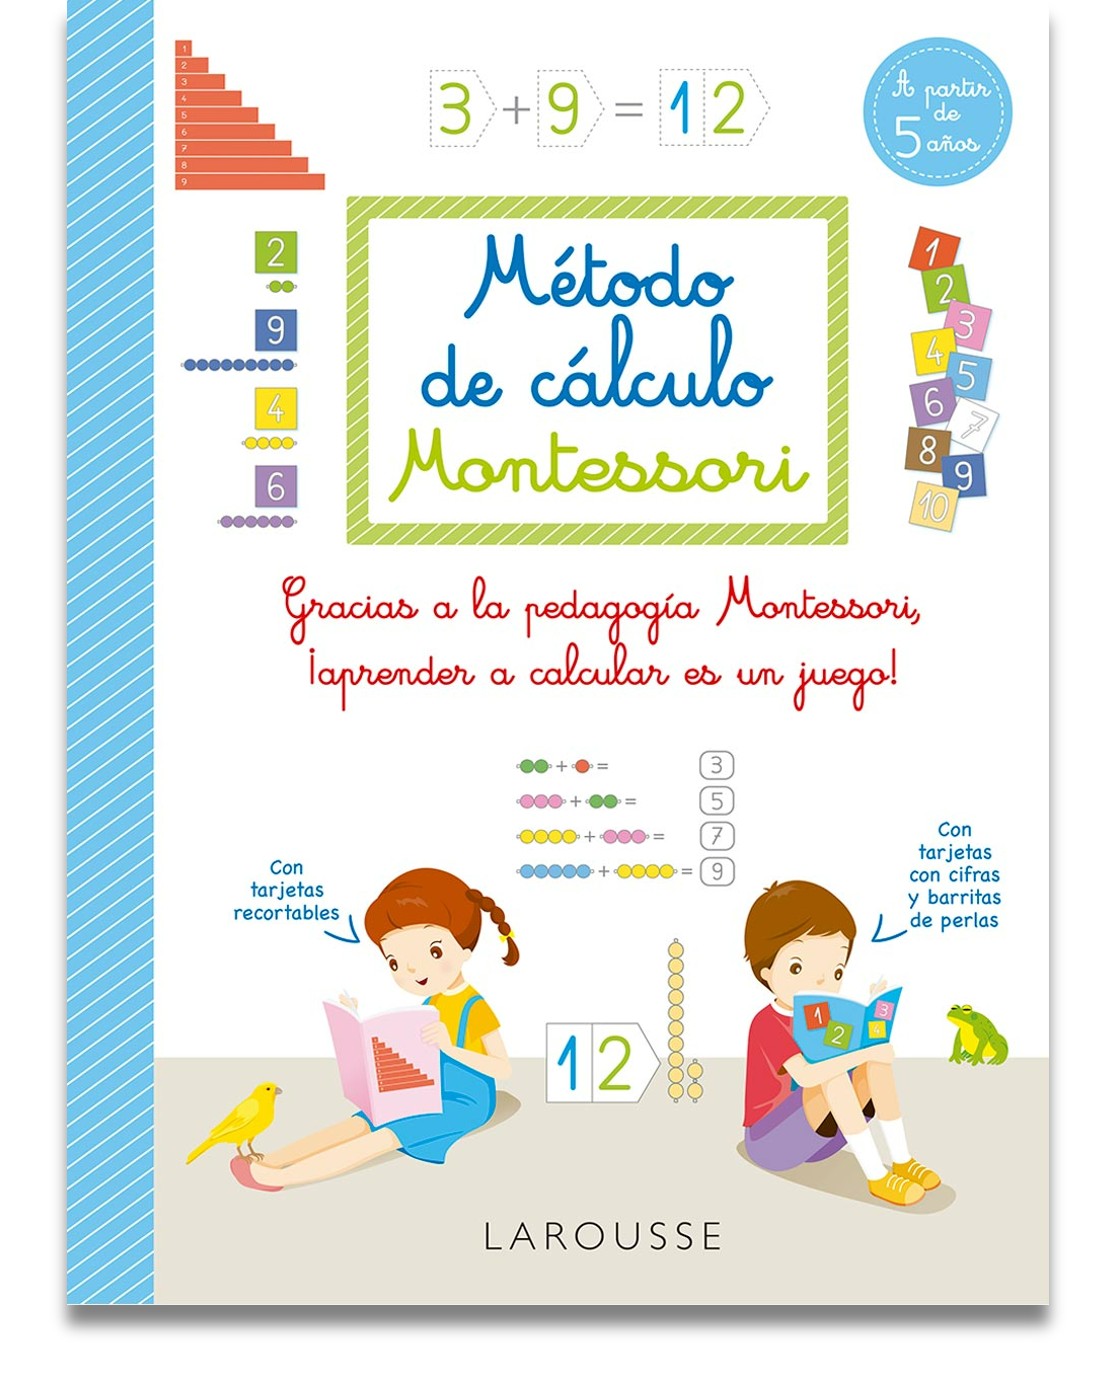 Método de cálculo Montessori